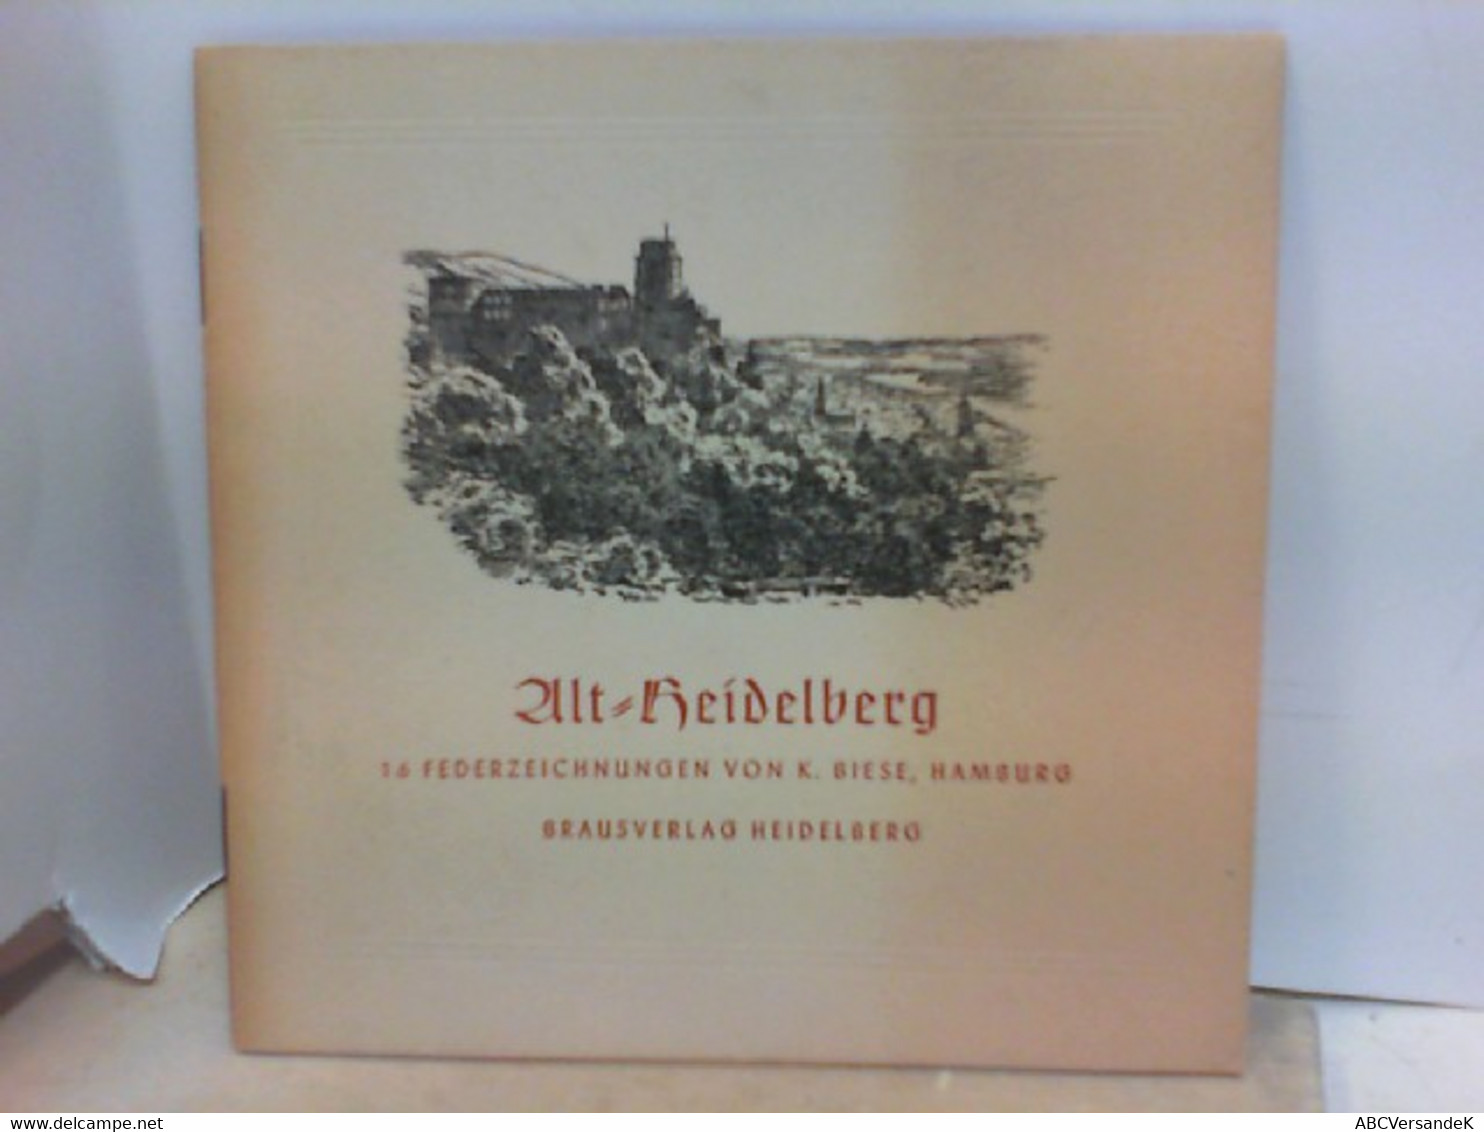 Alt - Heidelberg - 16 Federzeichnungen - Germany (general)